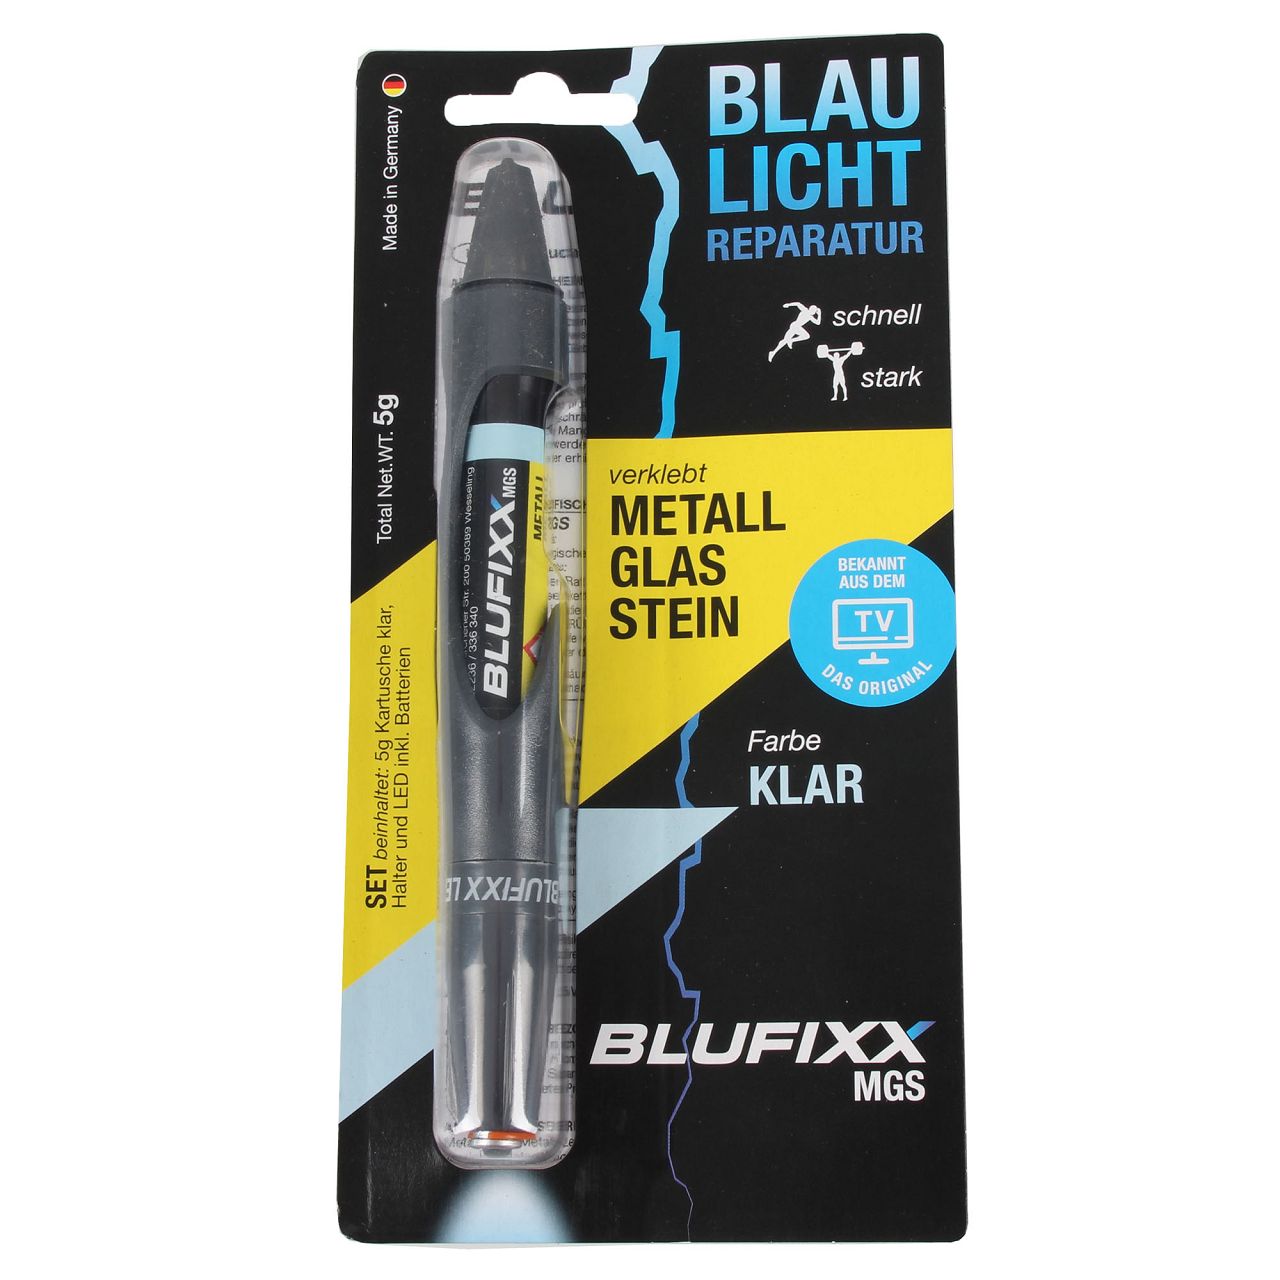 BLUFIXX MGS Reparaturstift Spezialklebstoff Set KLAR für Metall, Glas und Stein